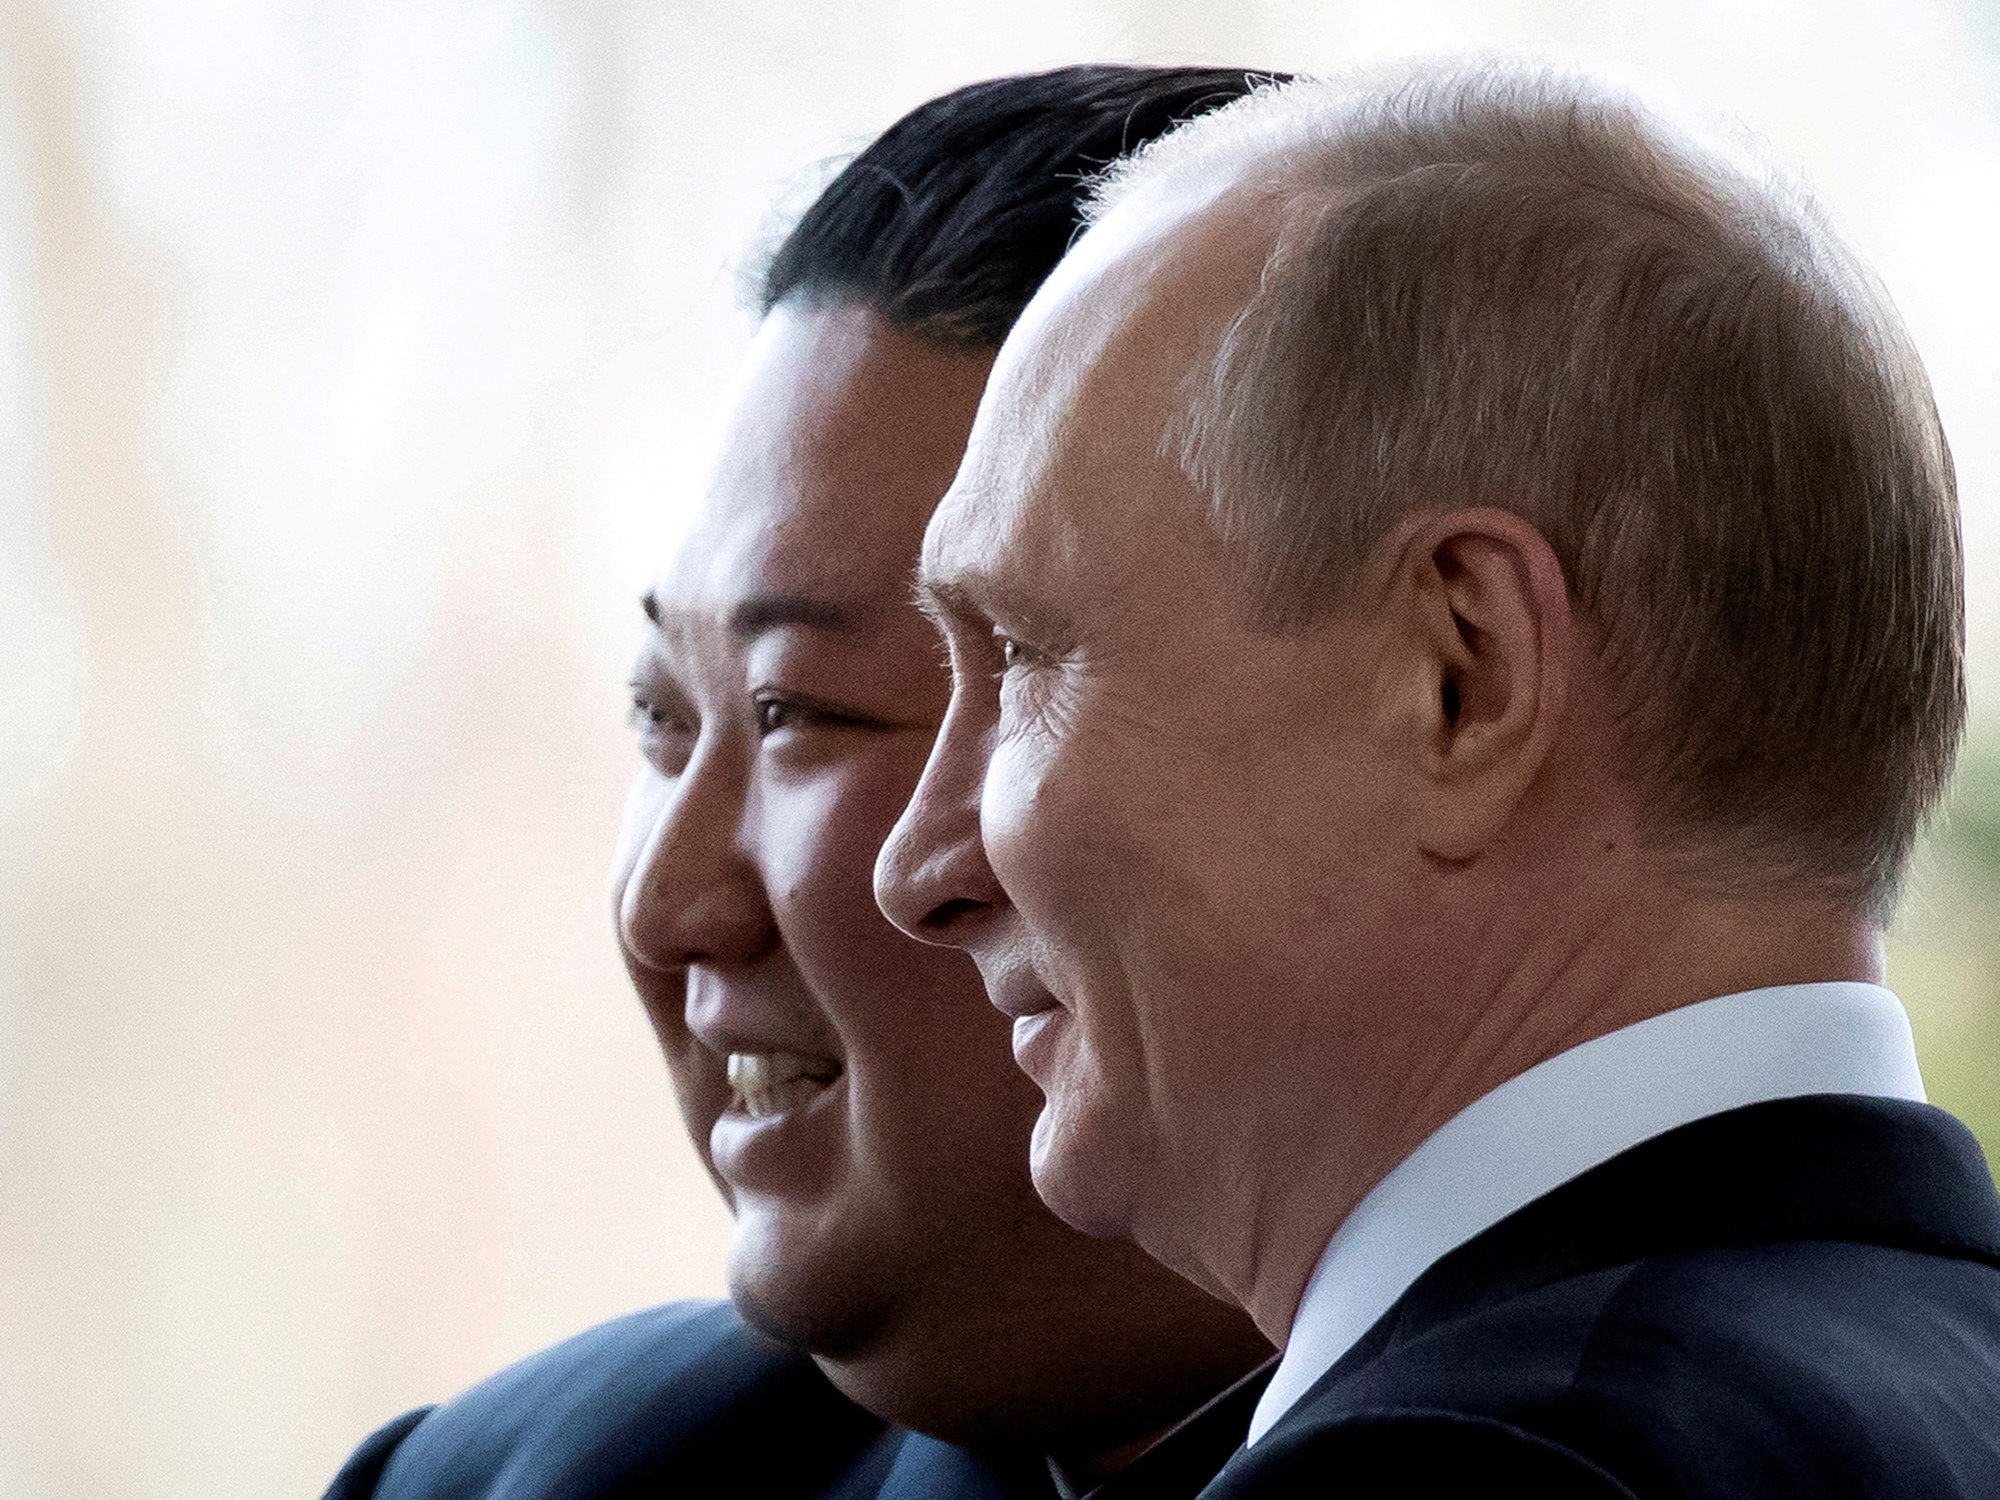 El líder norcoreano Kim Jong-un podría reunirse con Vladímir Putin en Rusia este mes, dice Estados Unidos